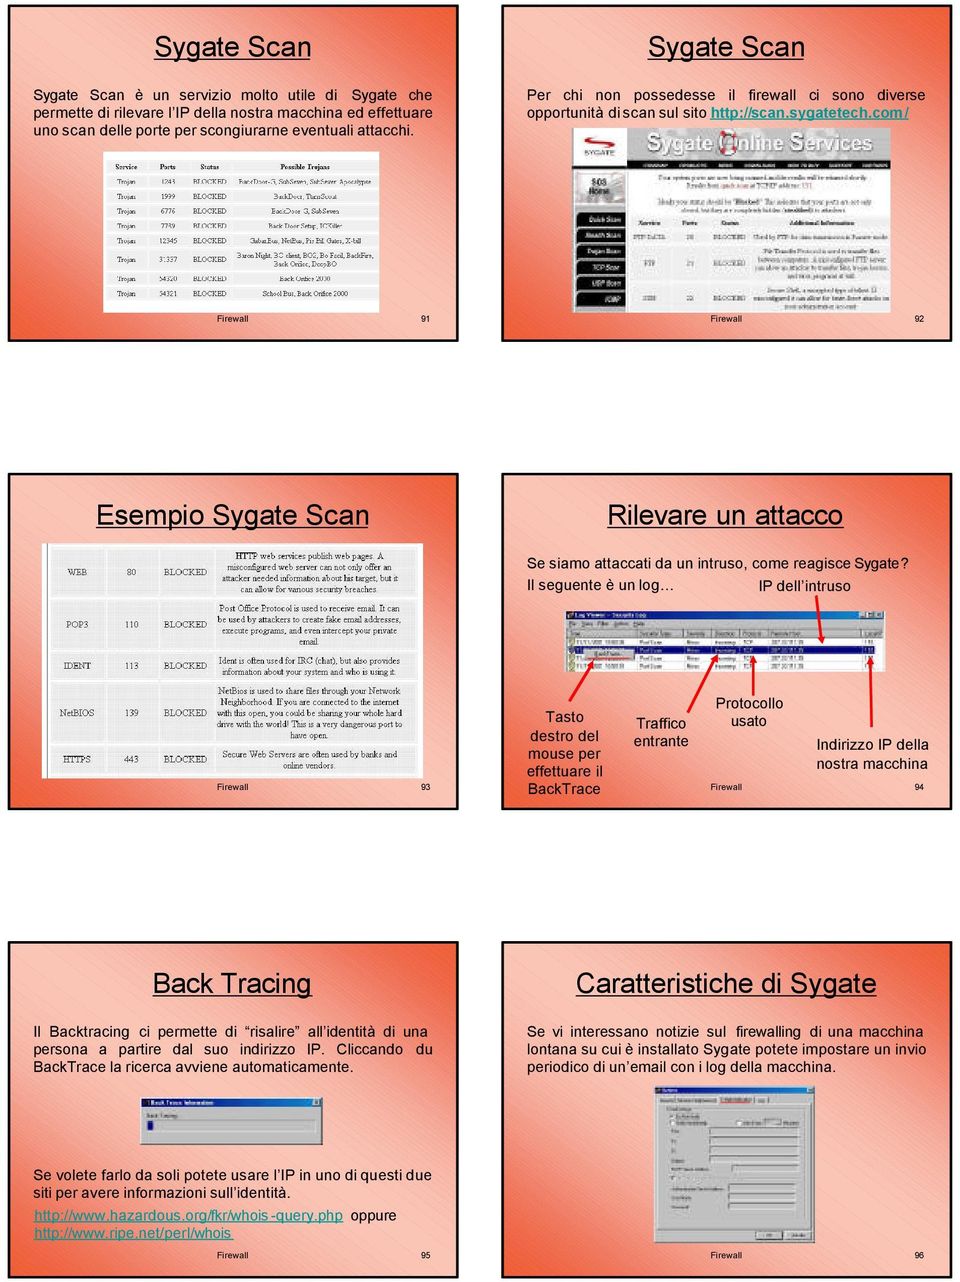 com/ Firewall 91 Firewall 92 Esempio Sygate Scan Rilevare un attacco Se siamo attaccati da un intruso, come reagisce Sygate?